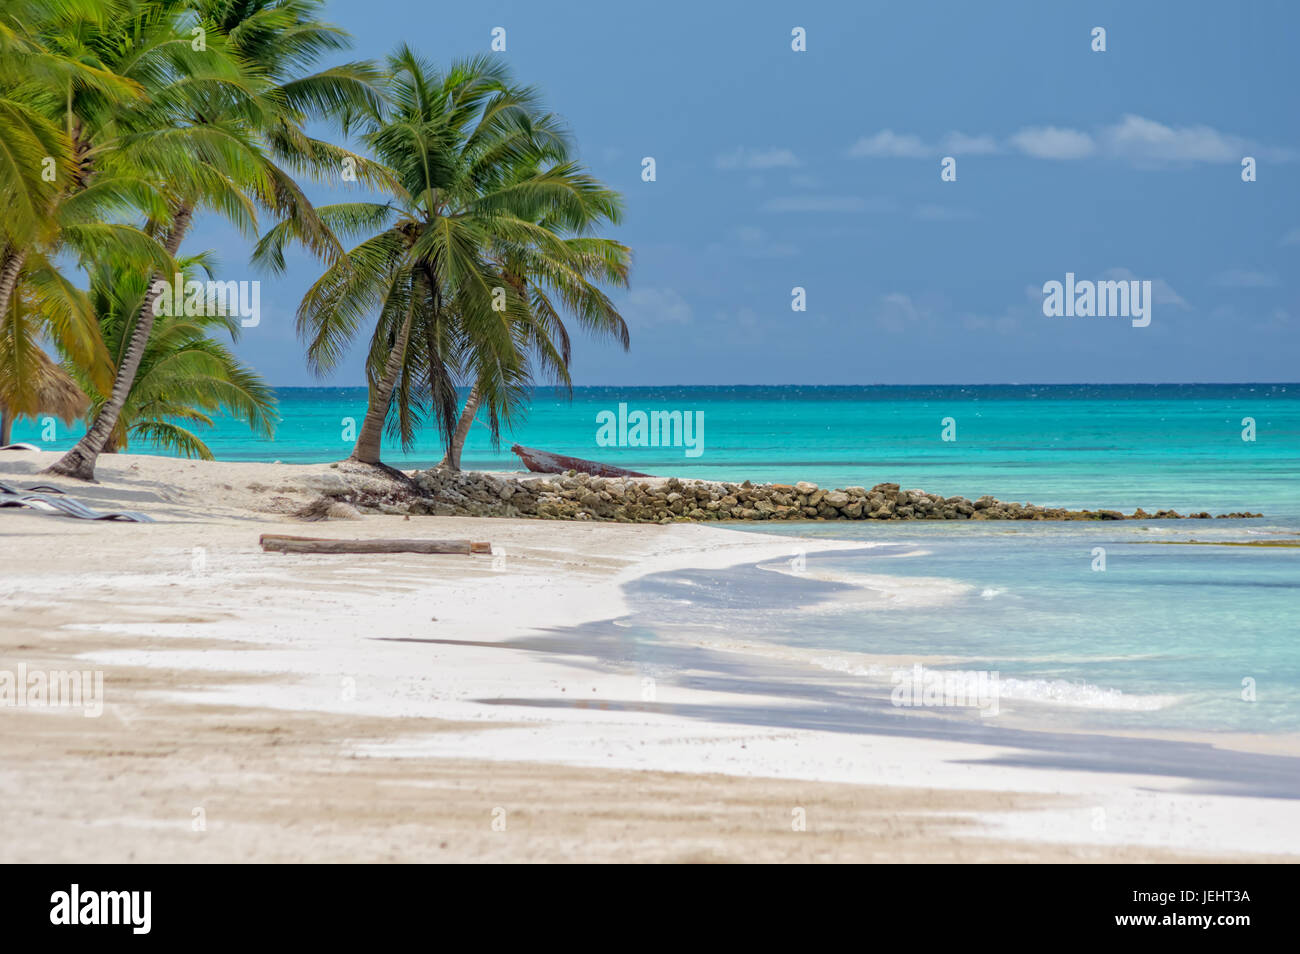 Saona Island in Dominikan Republic. Stock Photo